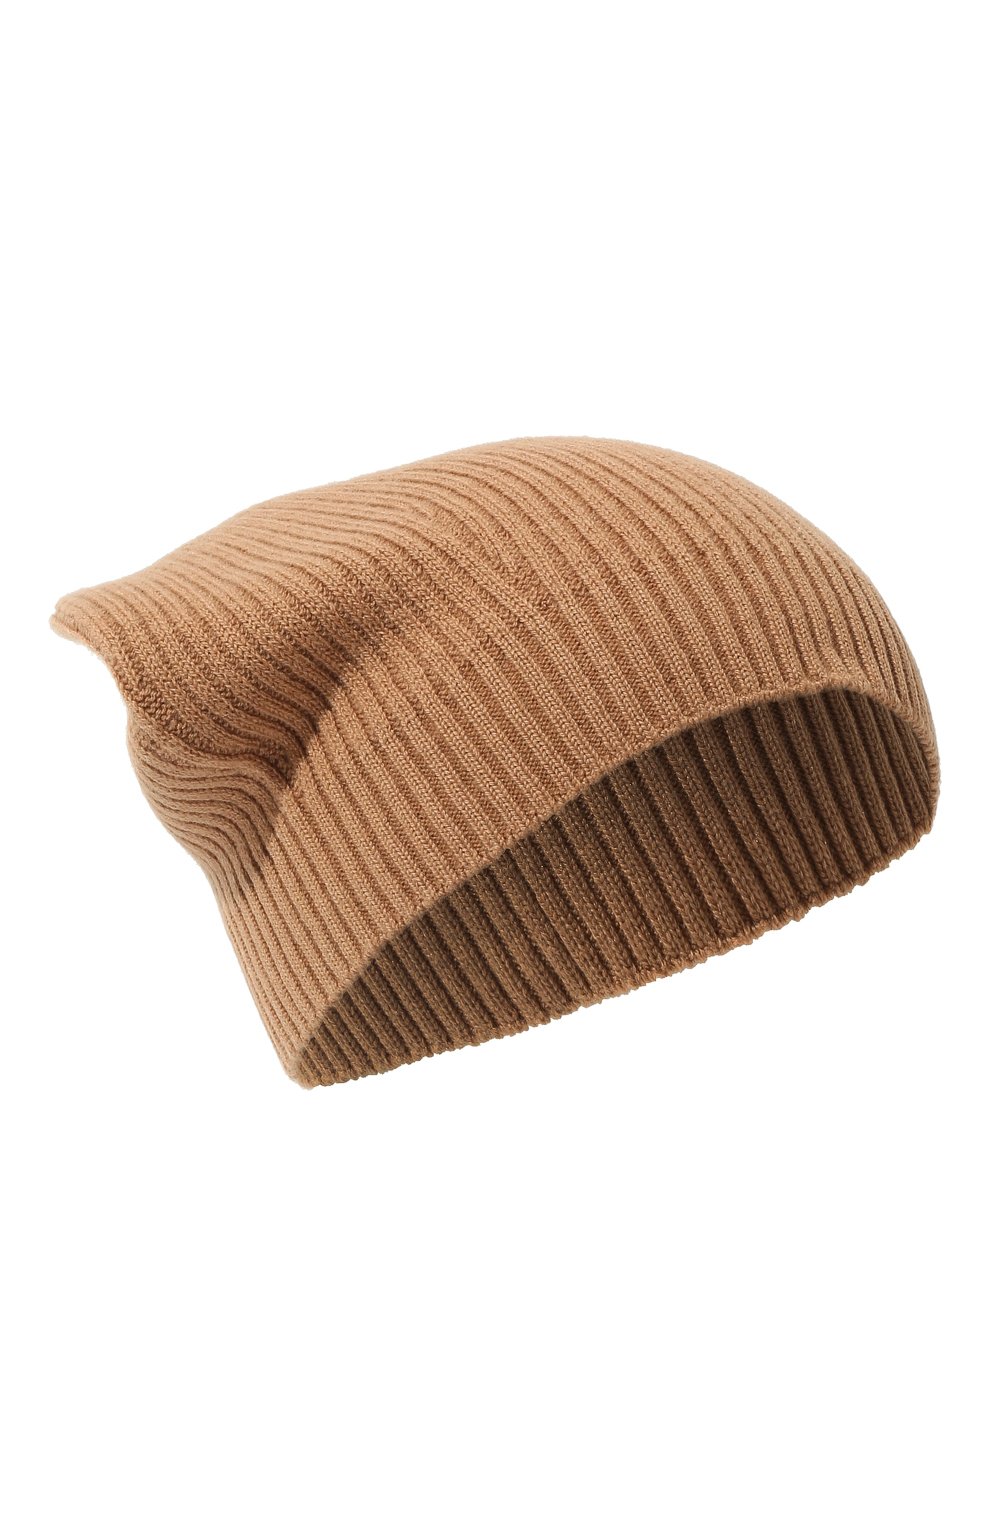 Женская шапка из шерсти и шелка ANTONELLI FIRENZE кори чневого цвета, арт. VERMEER/40689A-01934 | Фото 1 (Материал: Текстиль, Шерсть)